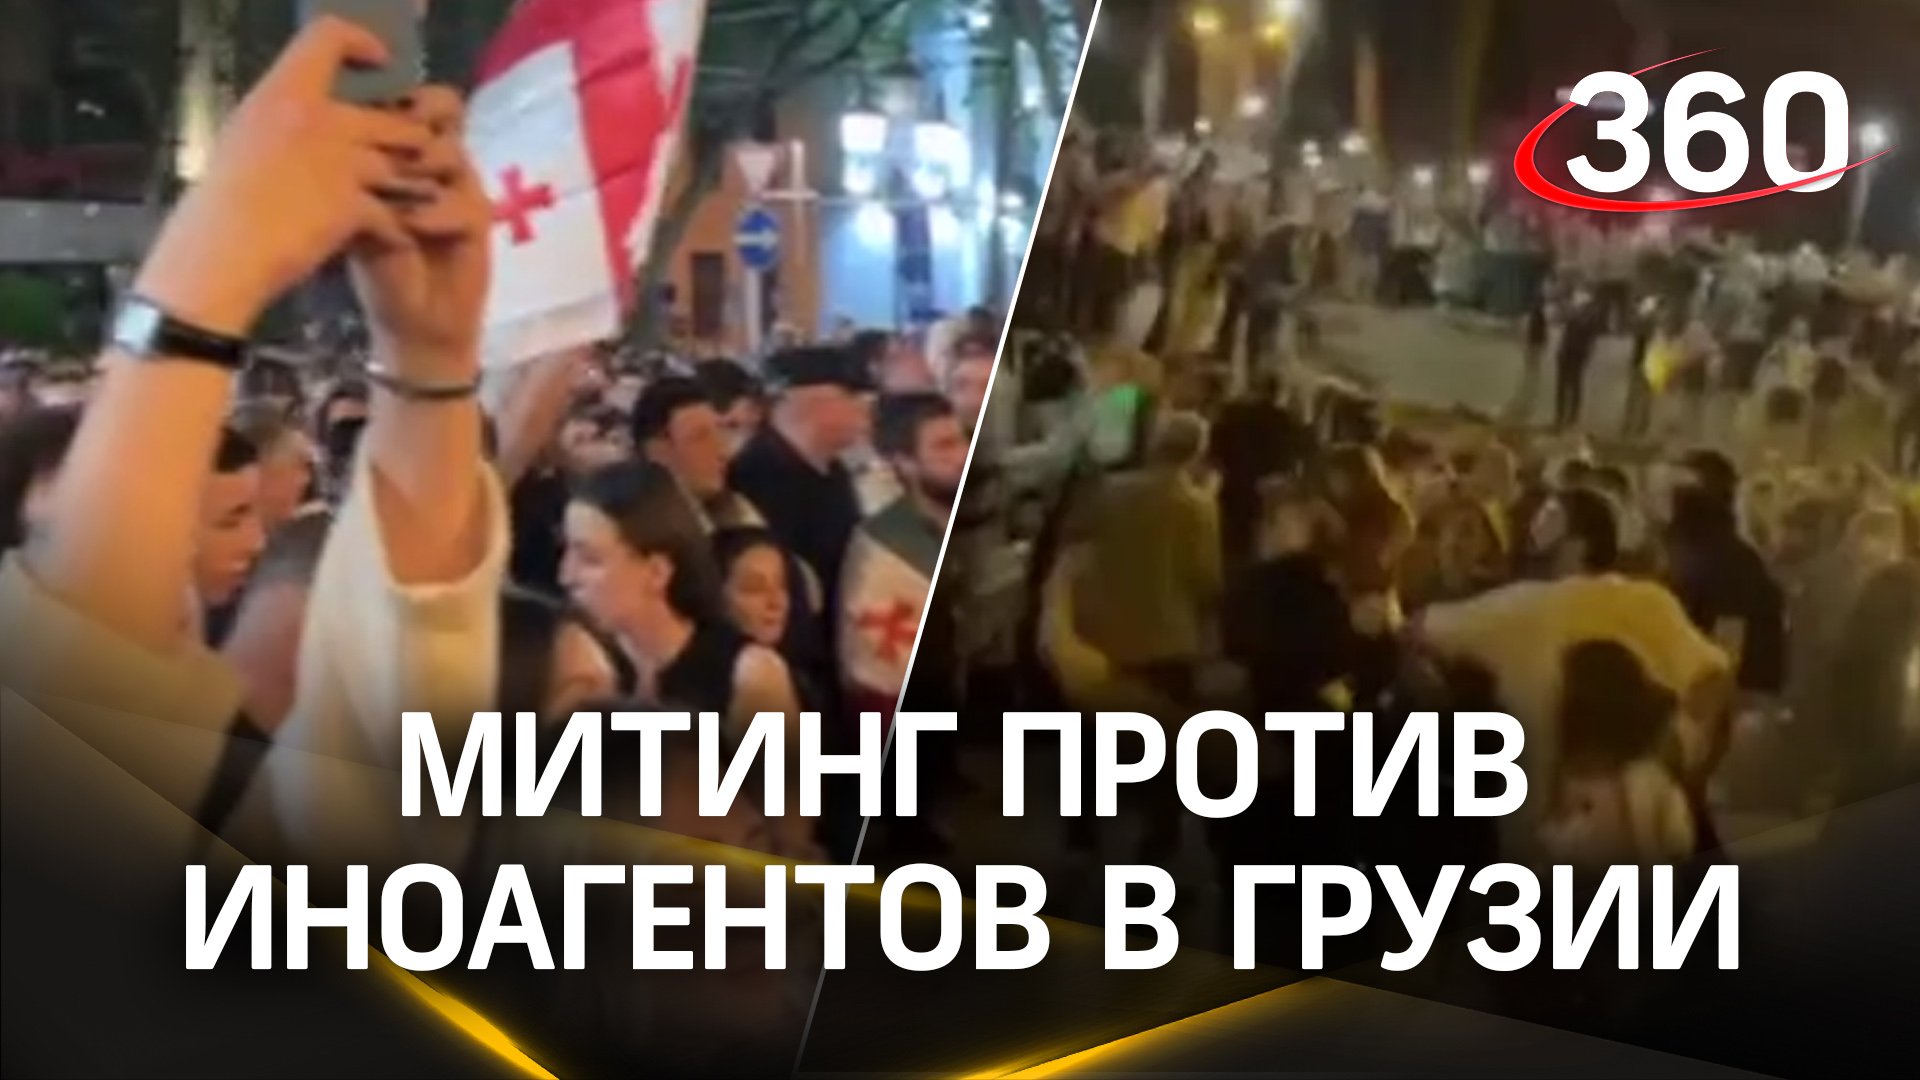 Обстановка в Тбилиси: митинг против закона об иноагентах. Полиция начала блокировать улицы